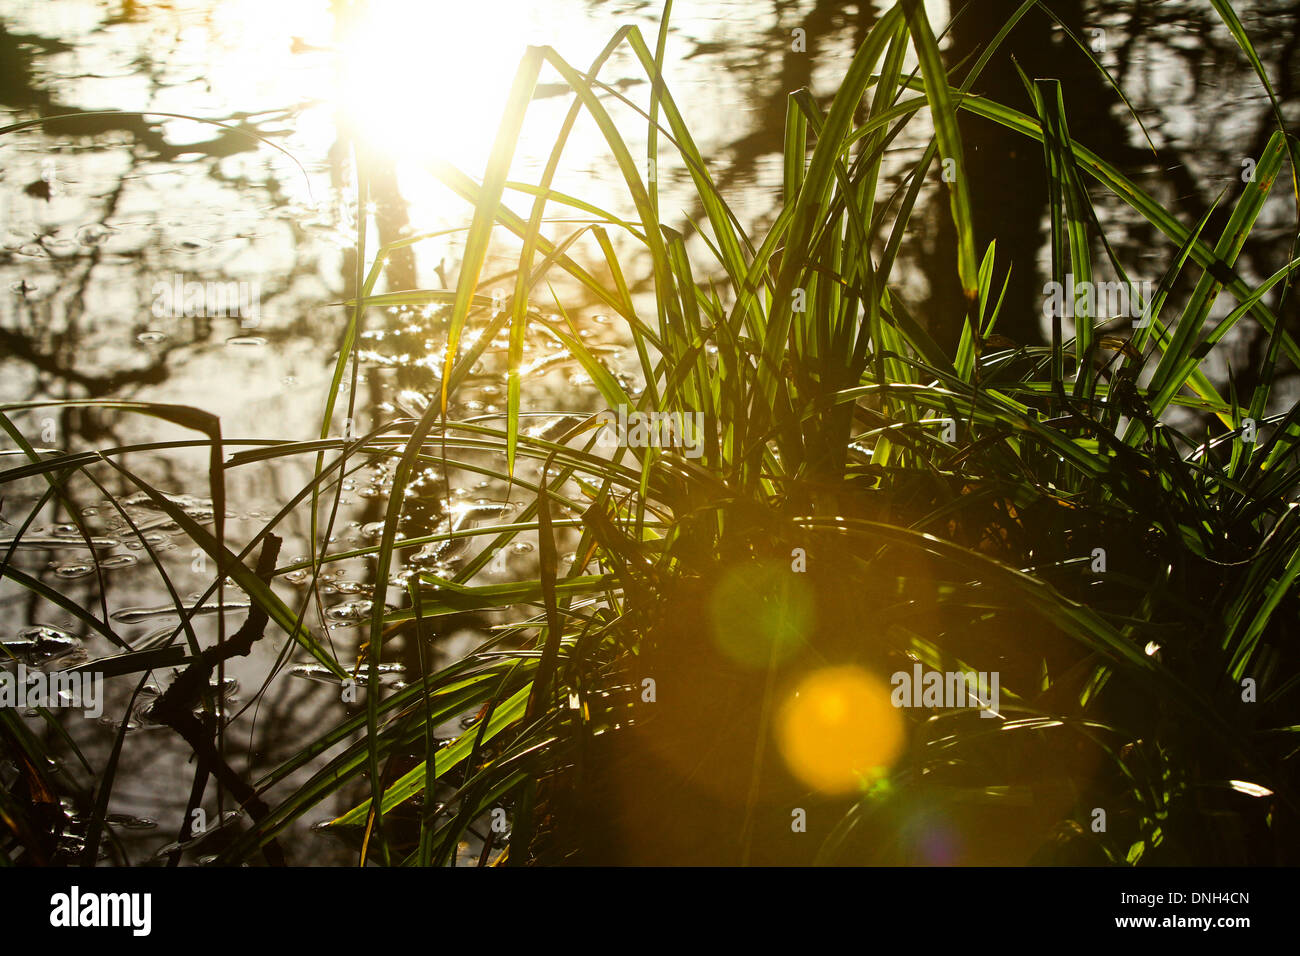 Pond grasses silhouette sunlight lens Flare Stock Photo